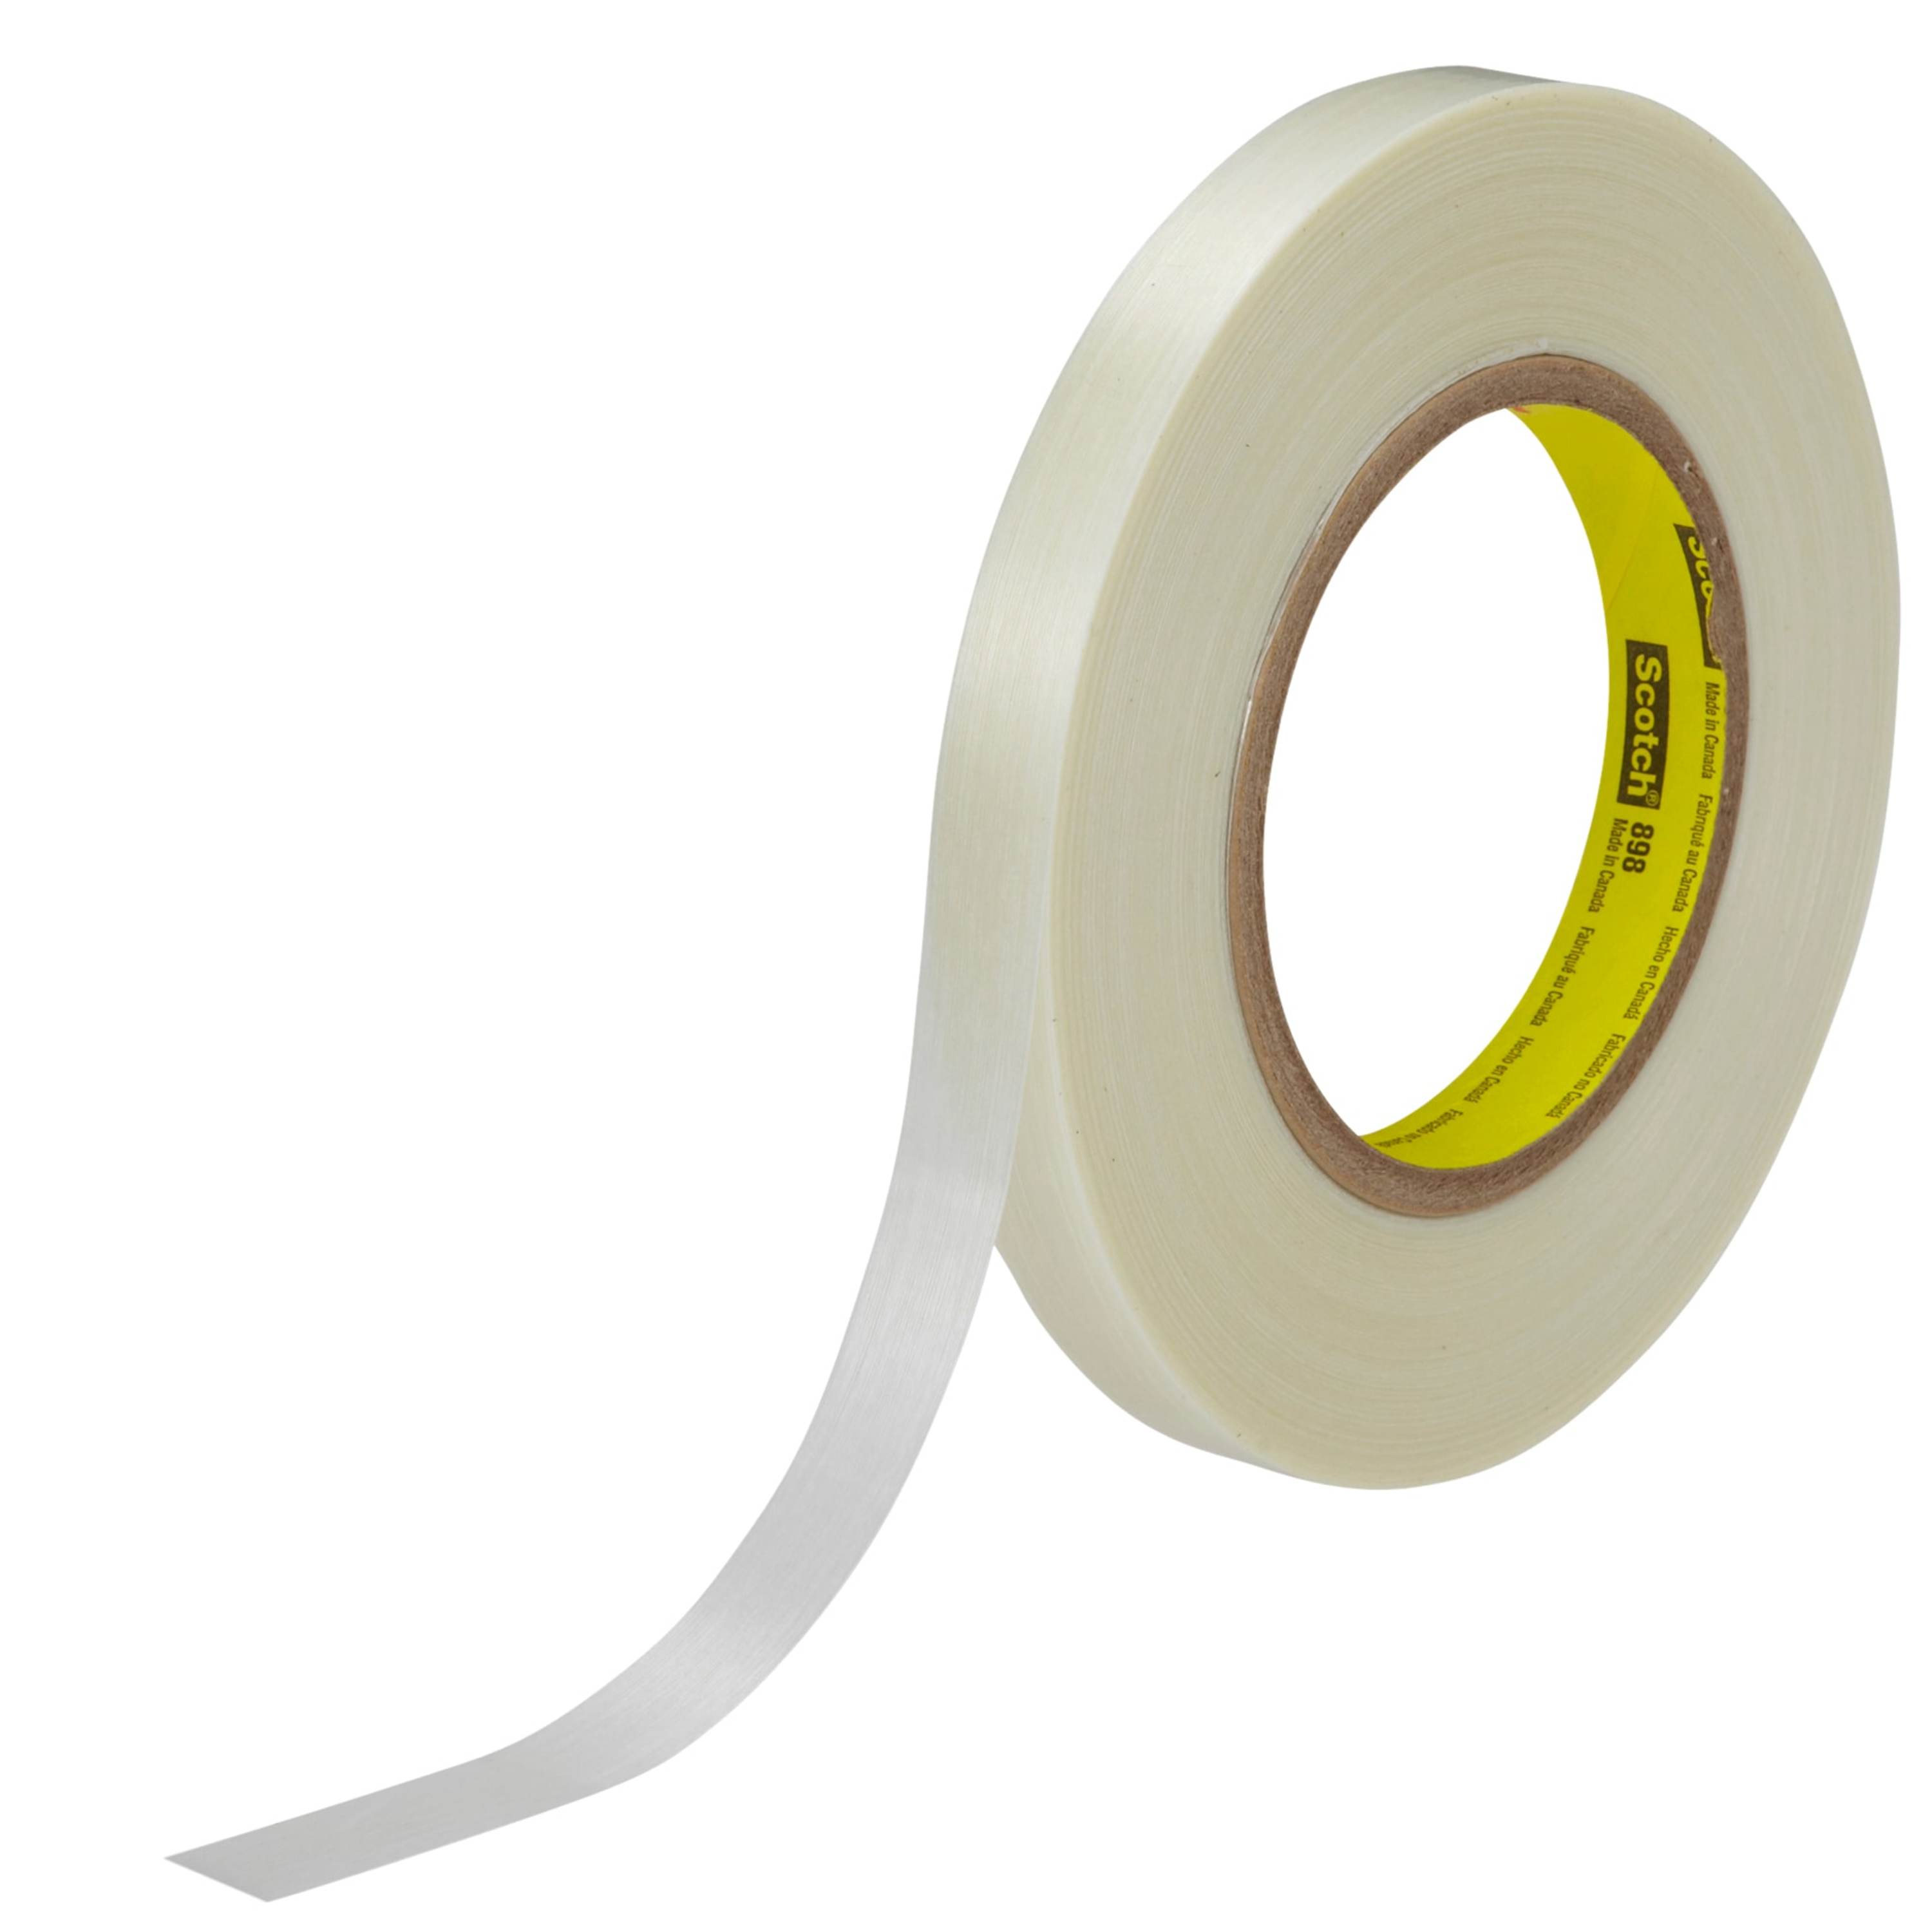 Scotch® Filament Tape 898, Clear, 15 mm x 330 m, 6.6 mil, 10 rolls per
case